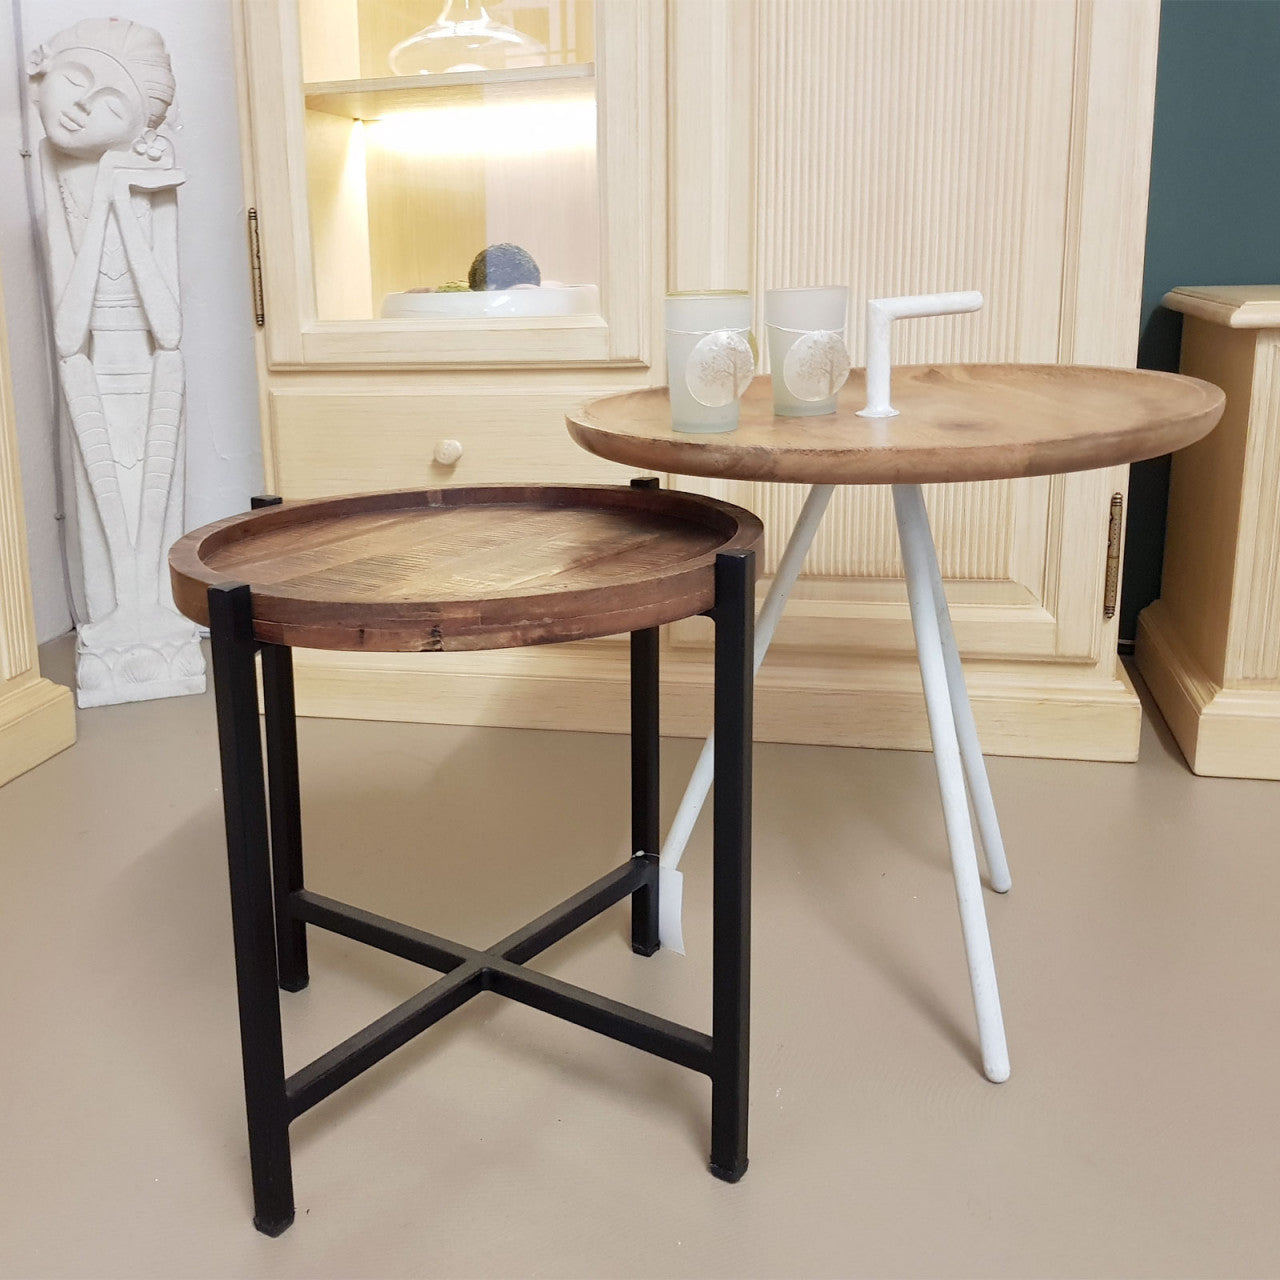 Couchtisch Wohnzimmer-Tisch Beistelltisch Metallgestell rund oder eckig verschiedene Modelle